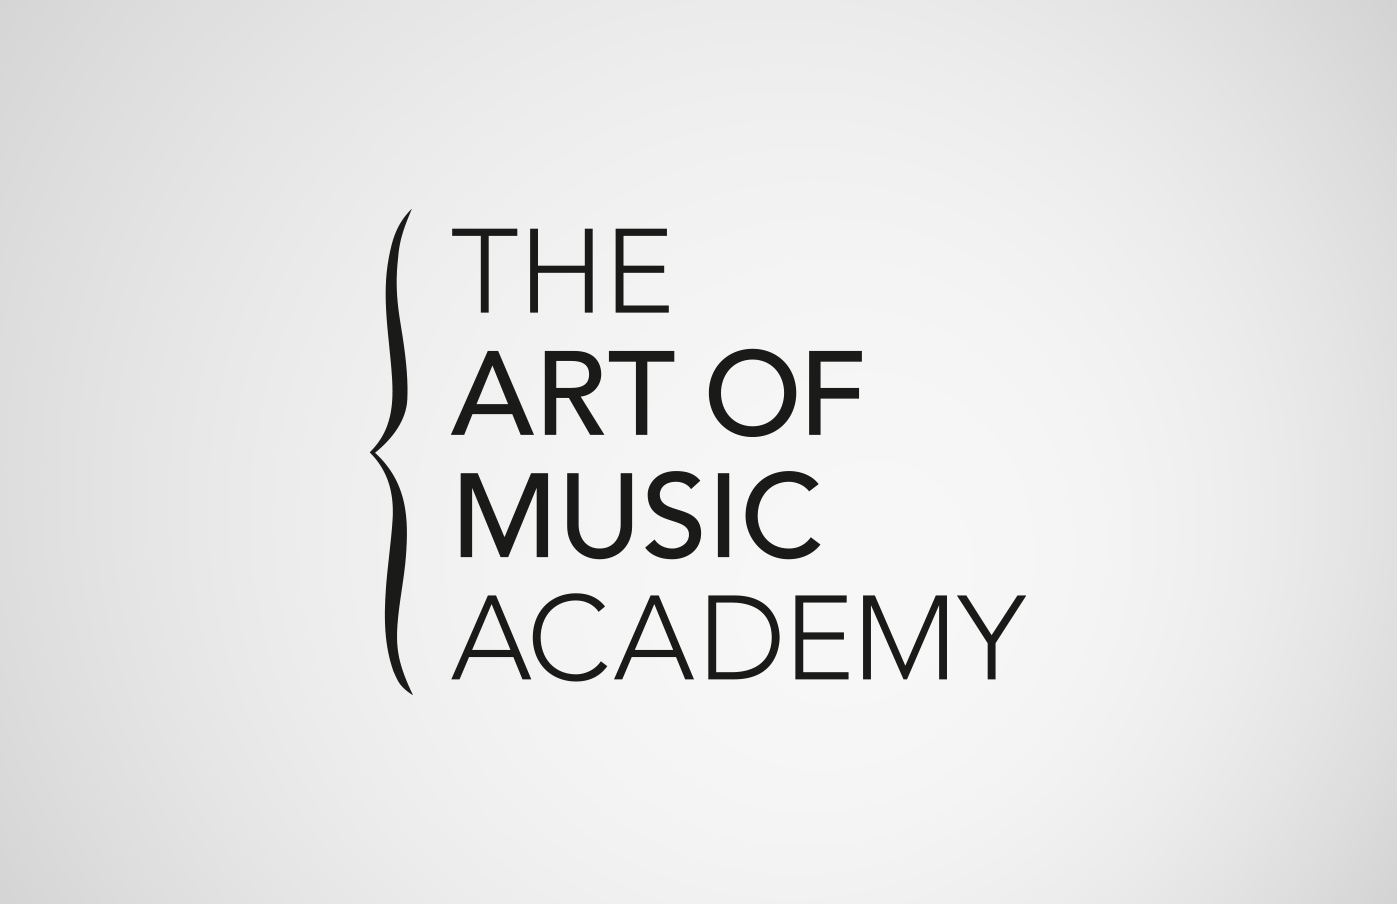 Logoentwicklung "The Art of Music Academy" für eine Musikschule in Kanada